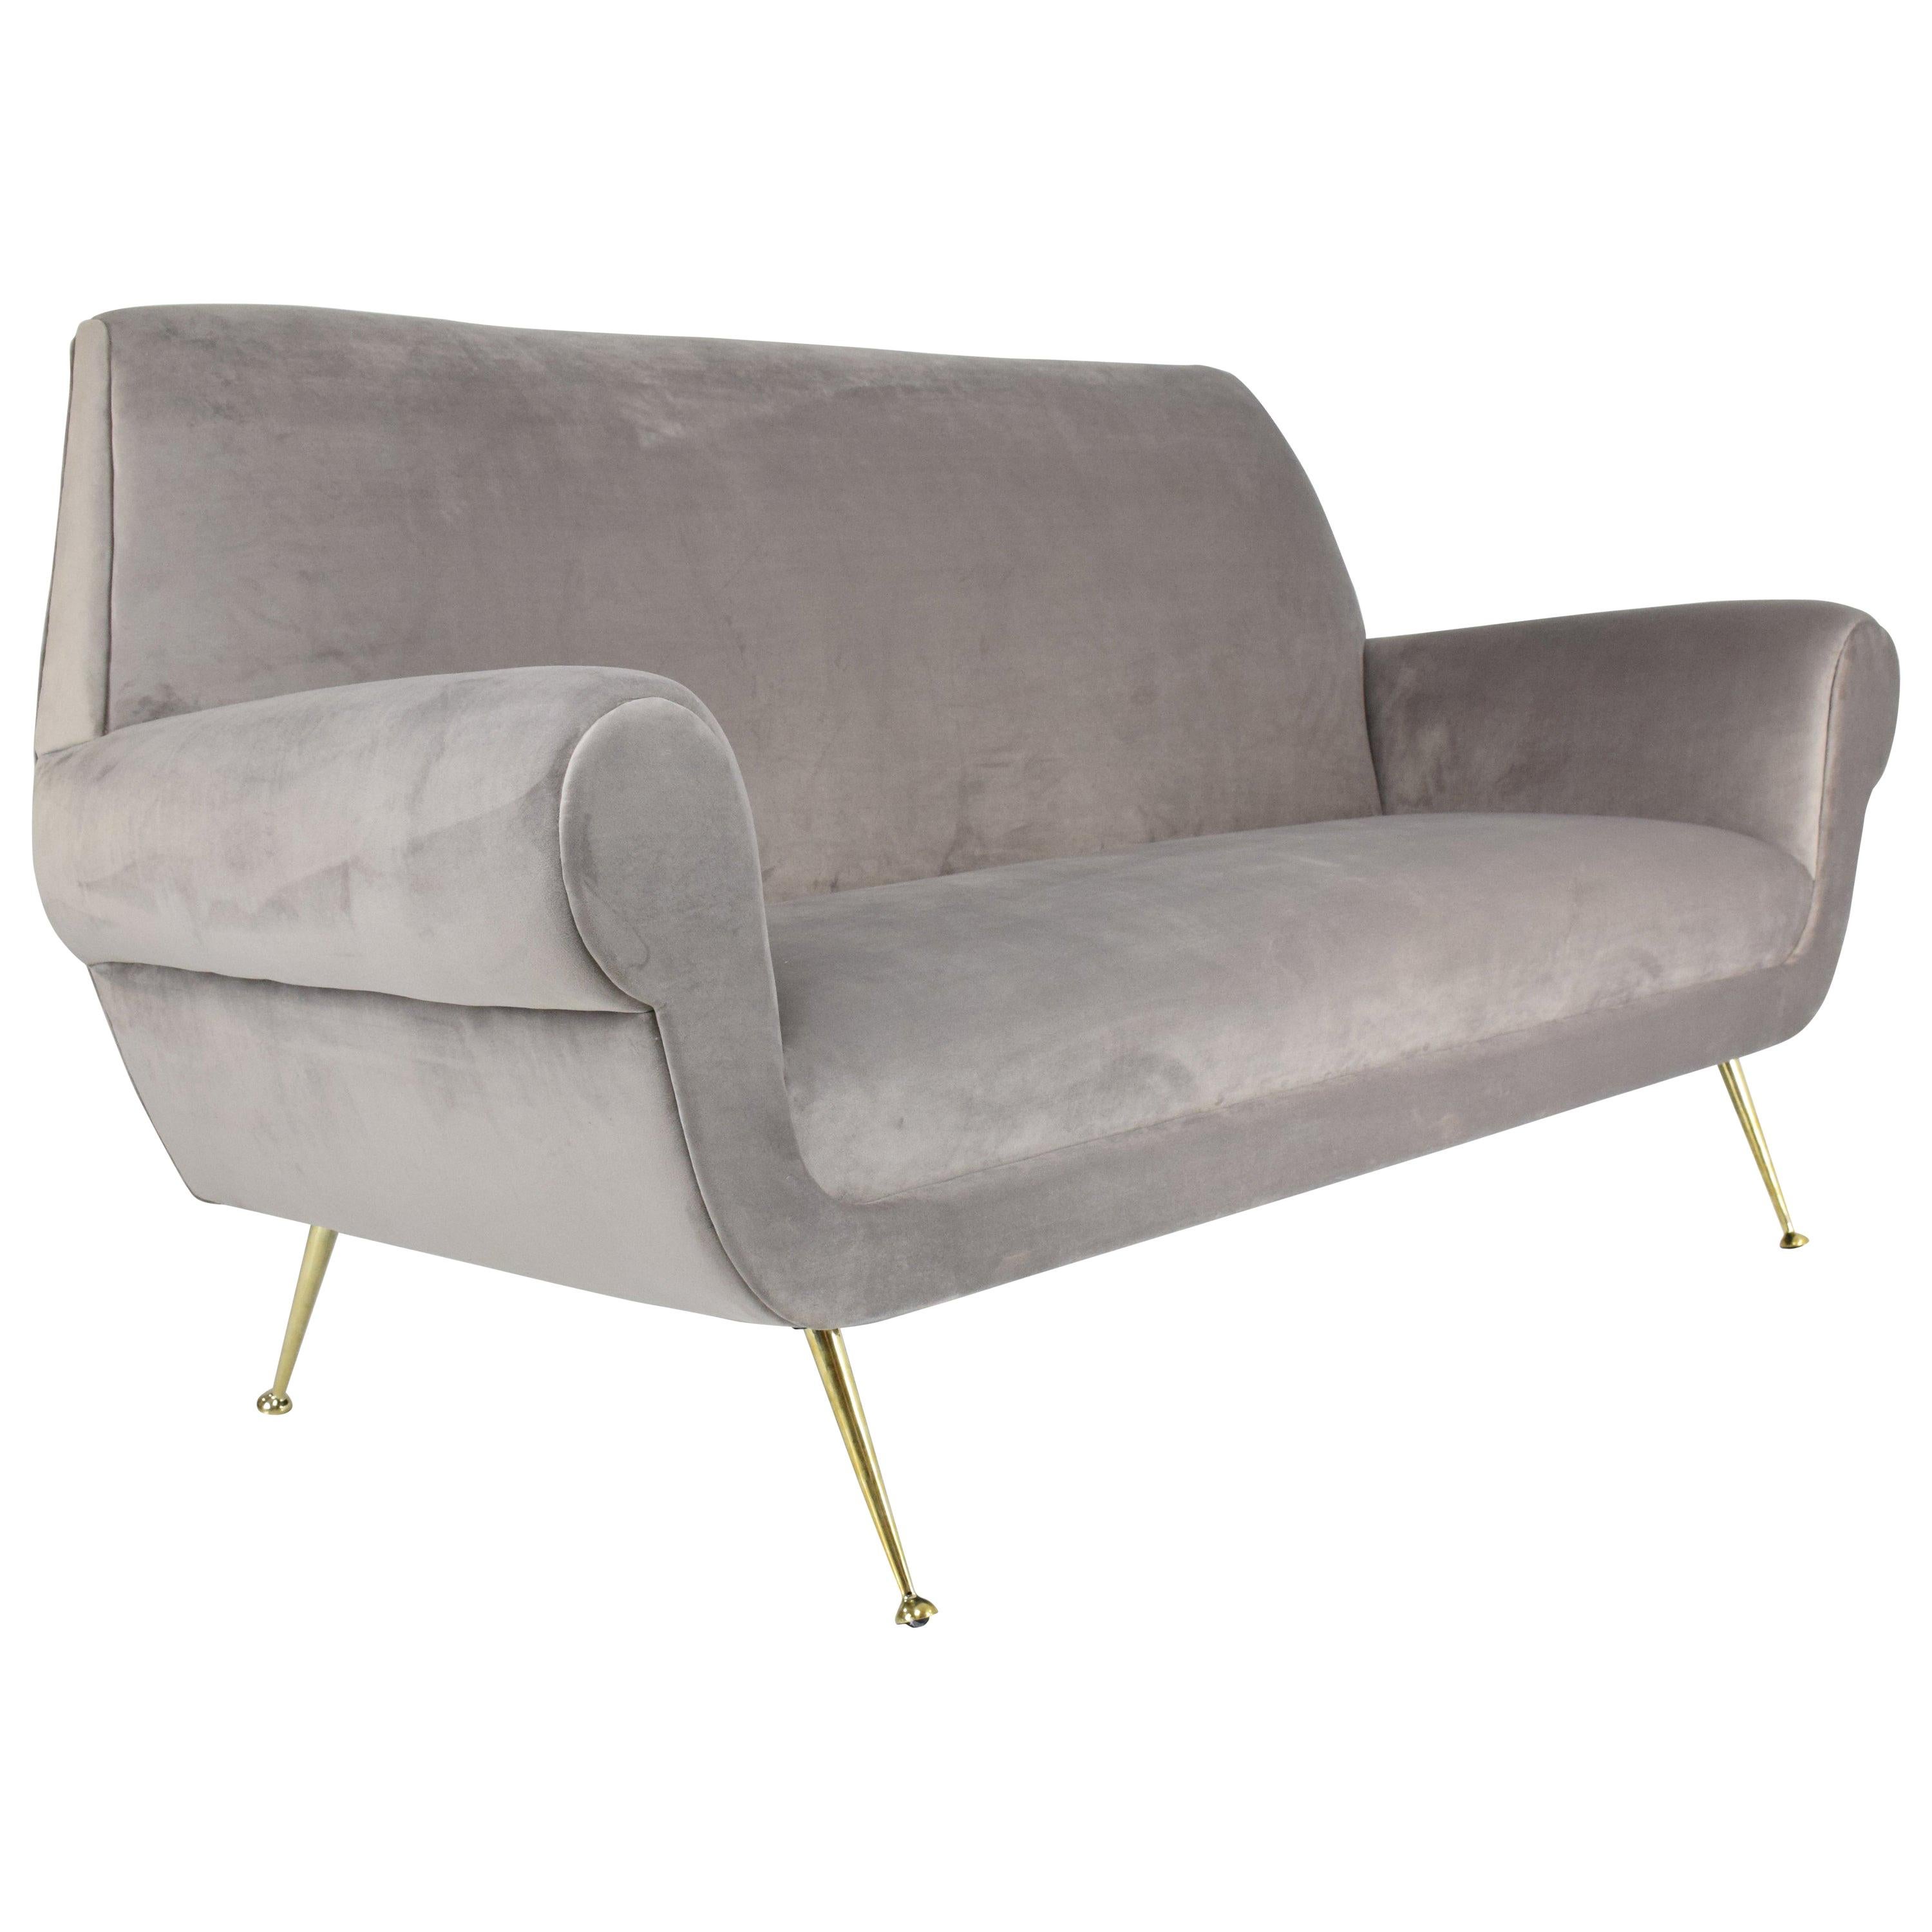 Italian Midcentury Restored Velvet Sofa by Gigi Radice for Minotti, 1950s